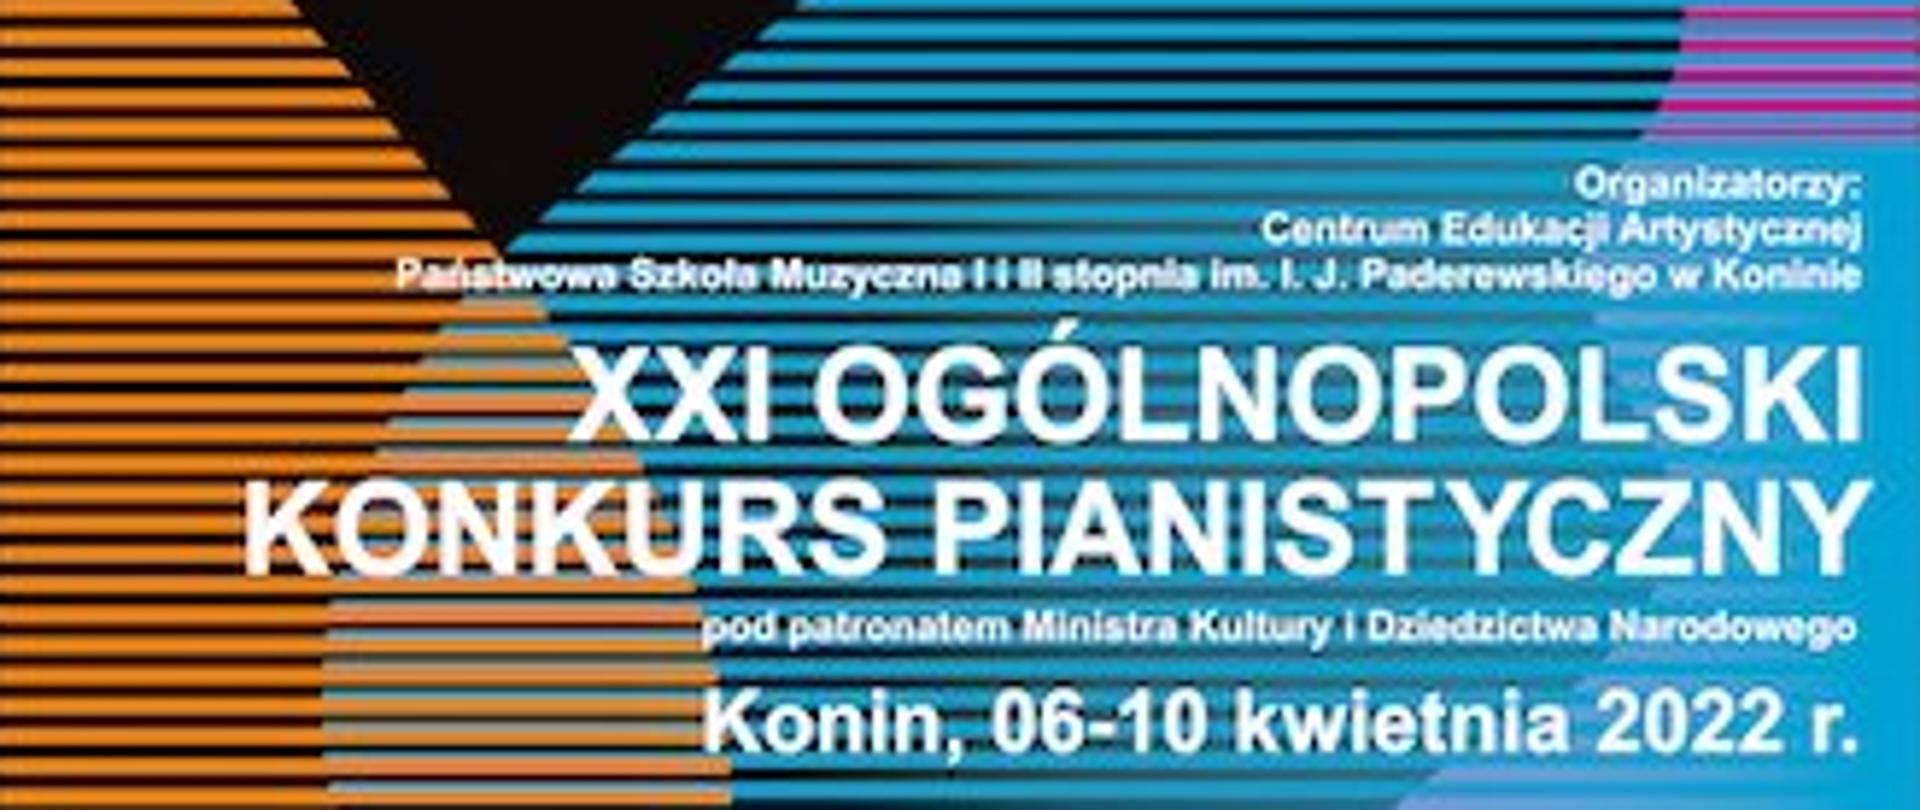 Plakat przedstawiający informacje na temat ogólnopolskiego konkursu pianistycznego , tekst na tle pomarańczowo, niebiesko, różowo- żółtym. poziome linie.